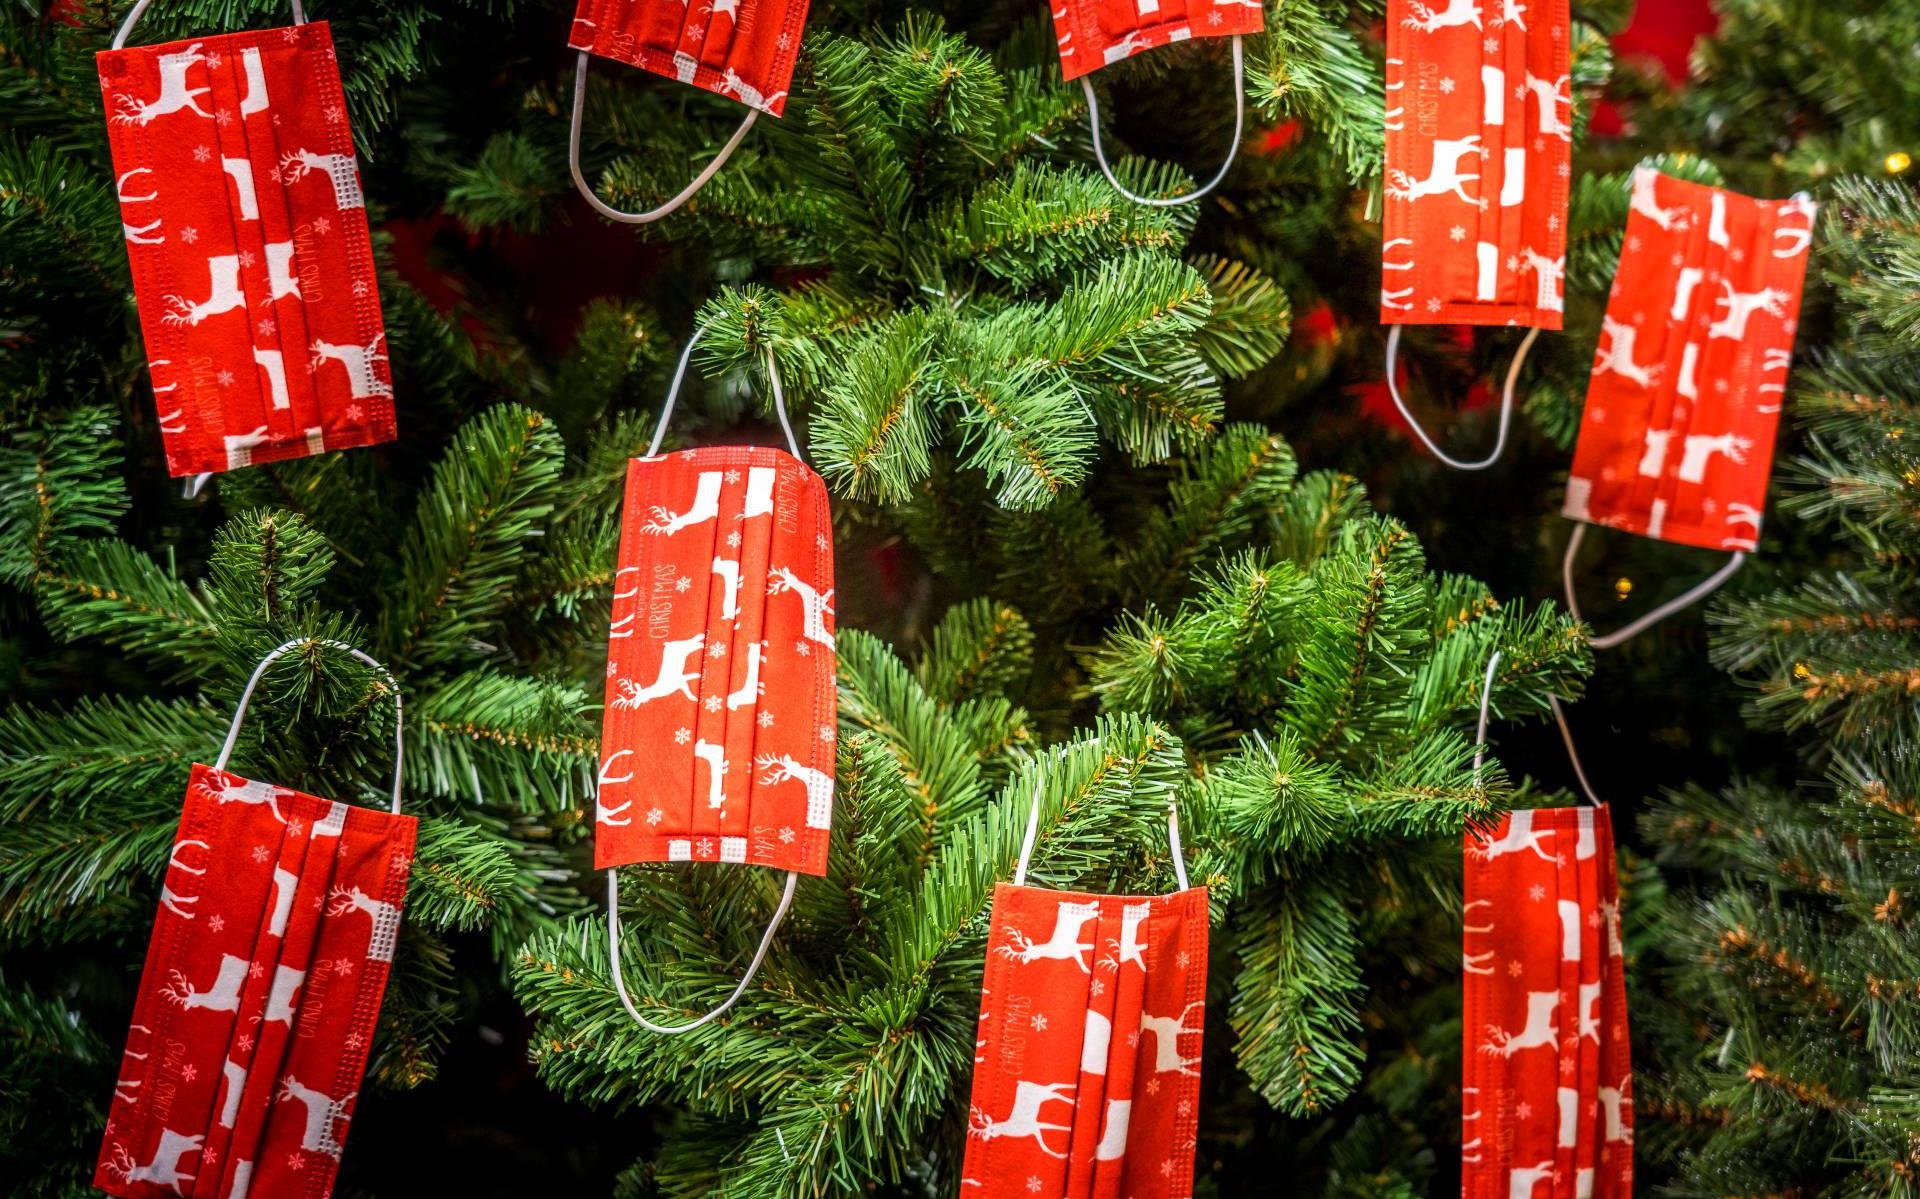 Kerstbomen- en spullen dit jaar weer erg populair'' Dagblad van het Noorden